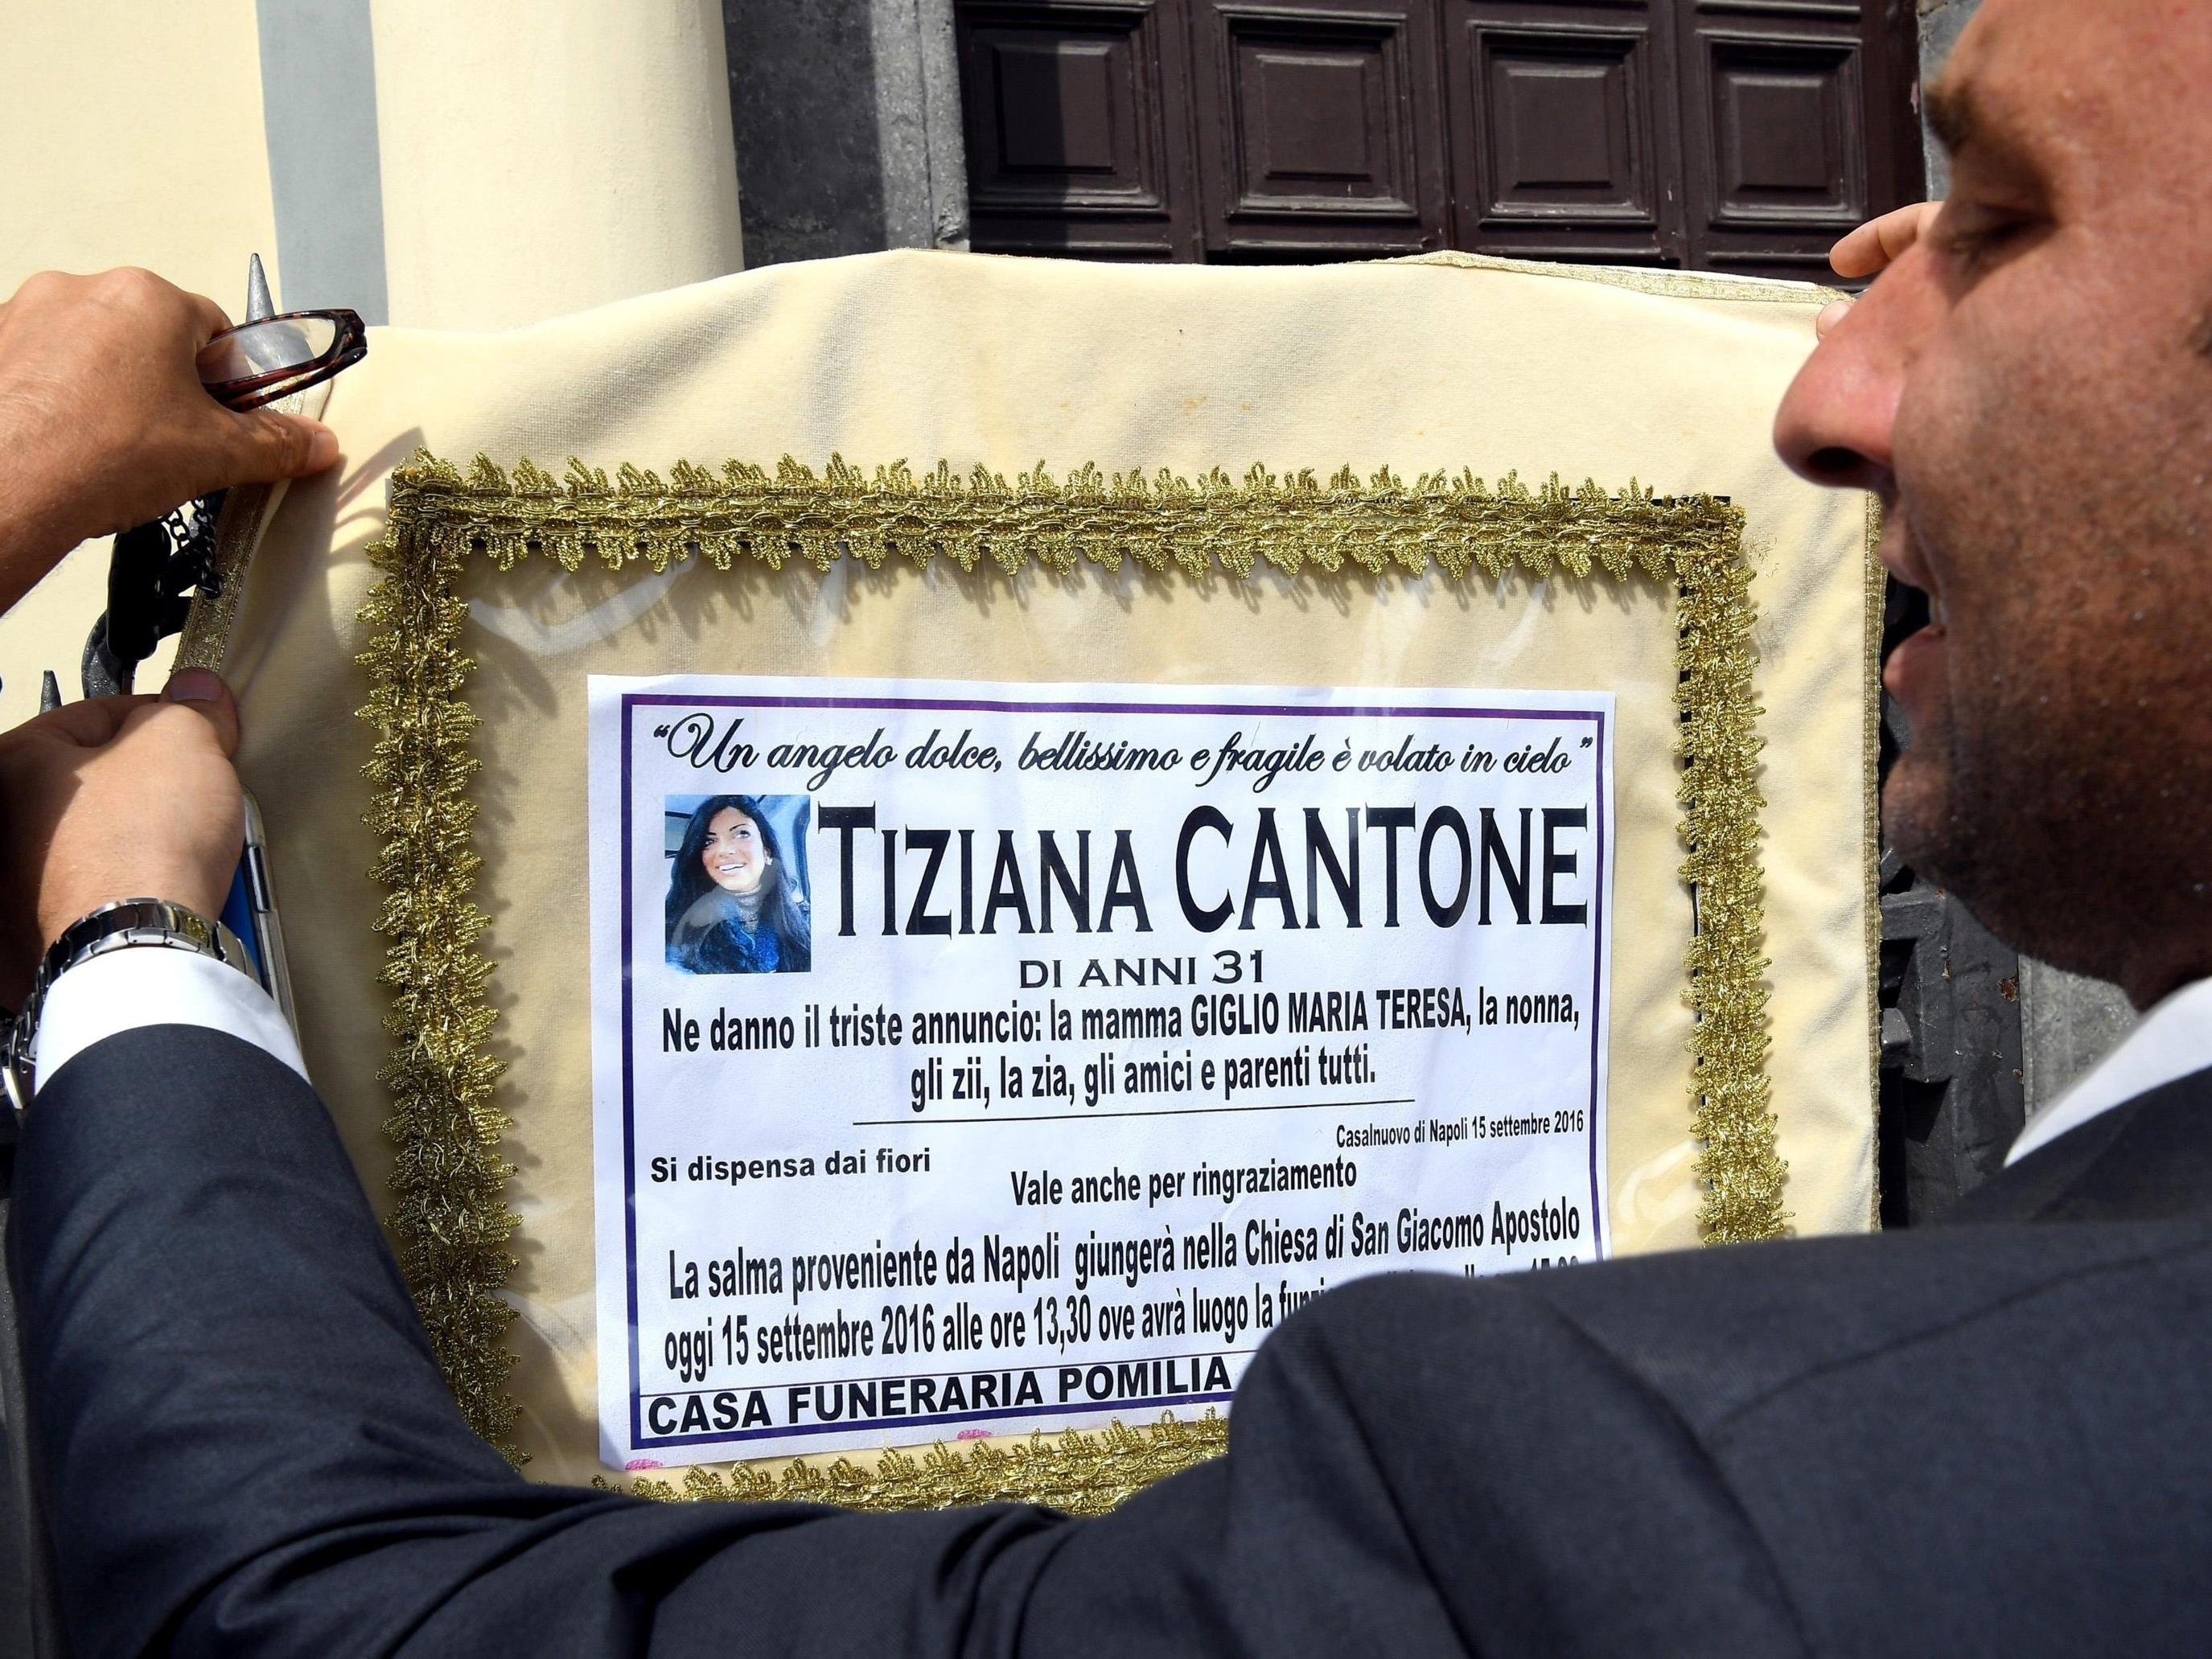 Die 31-jährige Tiziana Cantone erhängte sich, weil sie die öffentliche Demütigung nicht mehr ertrug, nachdem ein Sexvideo von ihr im Netz veröffentlicht wurde.